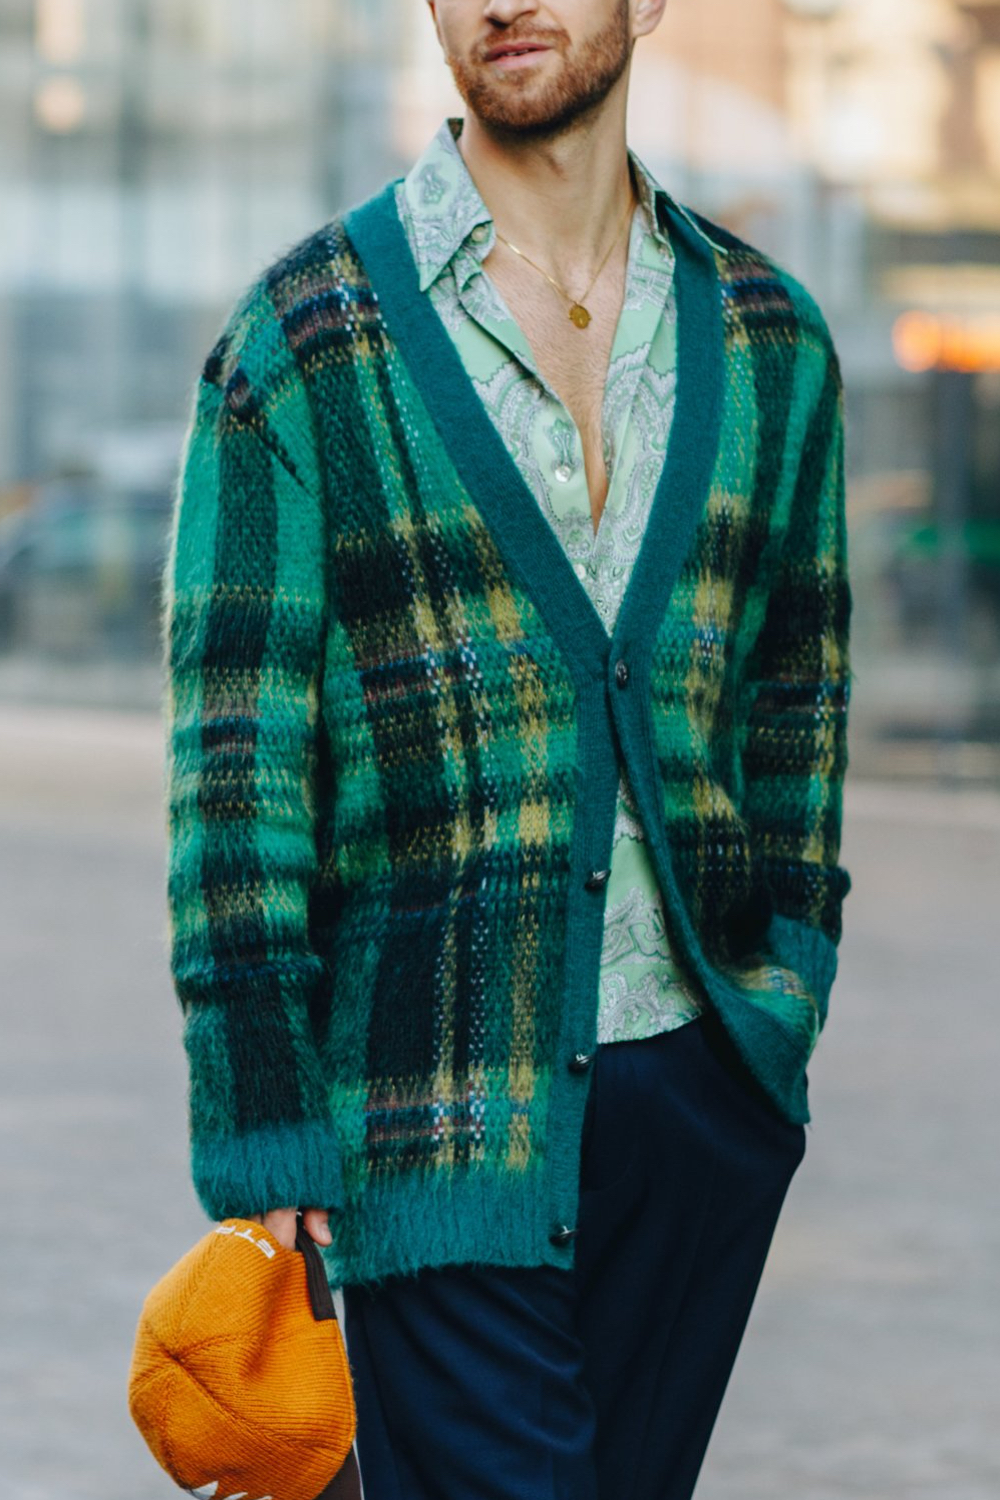 ロングカーディガン コーデ特集 着こなしのコツとエレガントに装ったメンズストリートスナップをピック メンズファッションメディア Otokomae 男前研究所